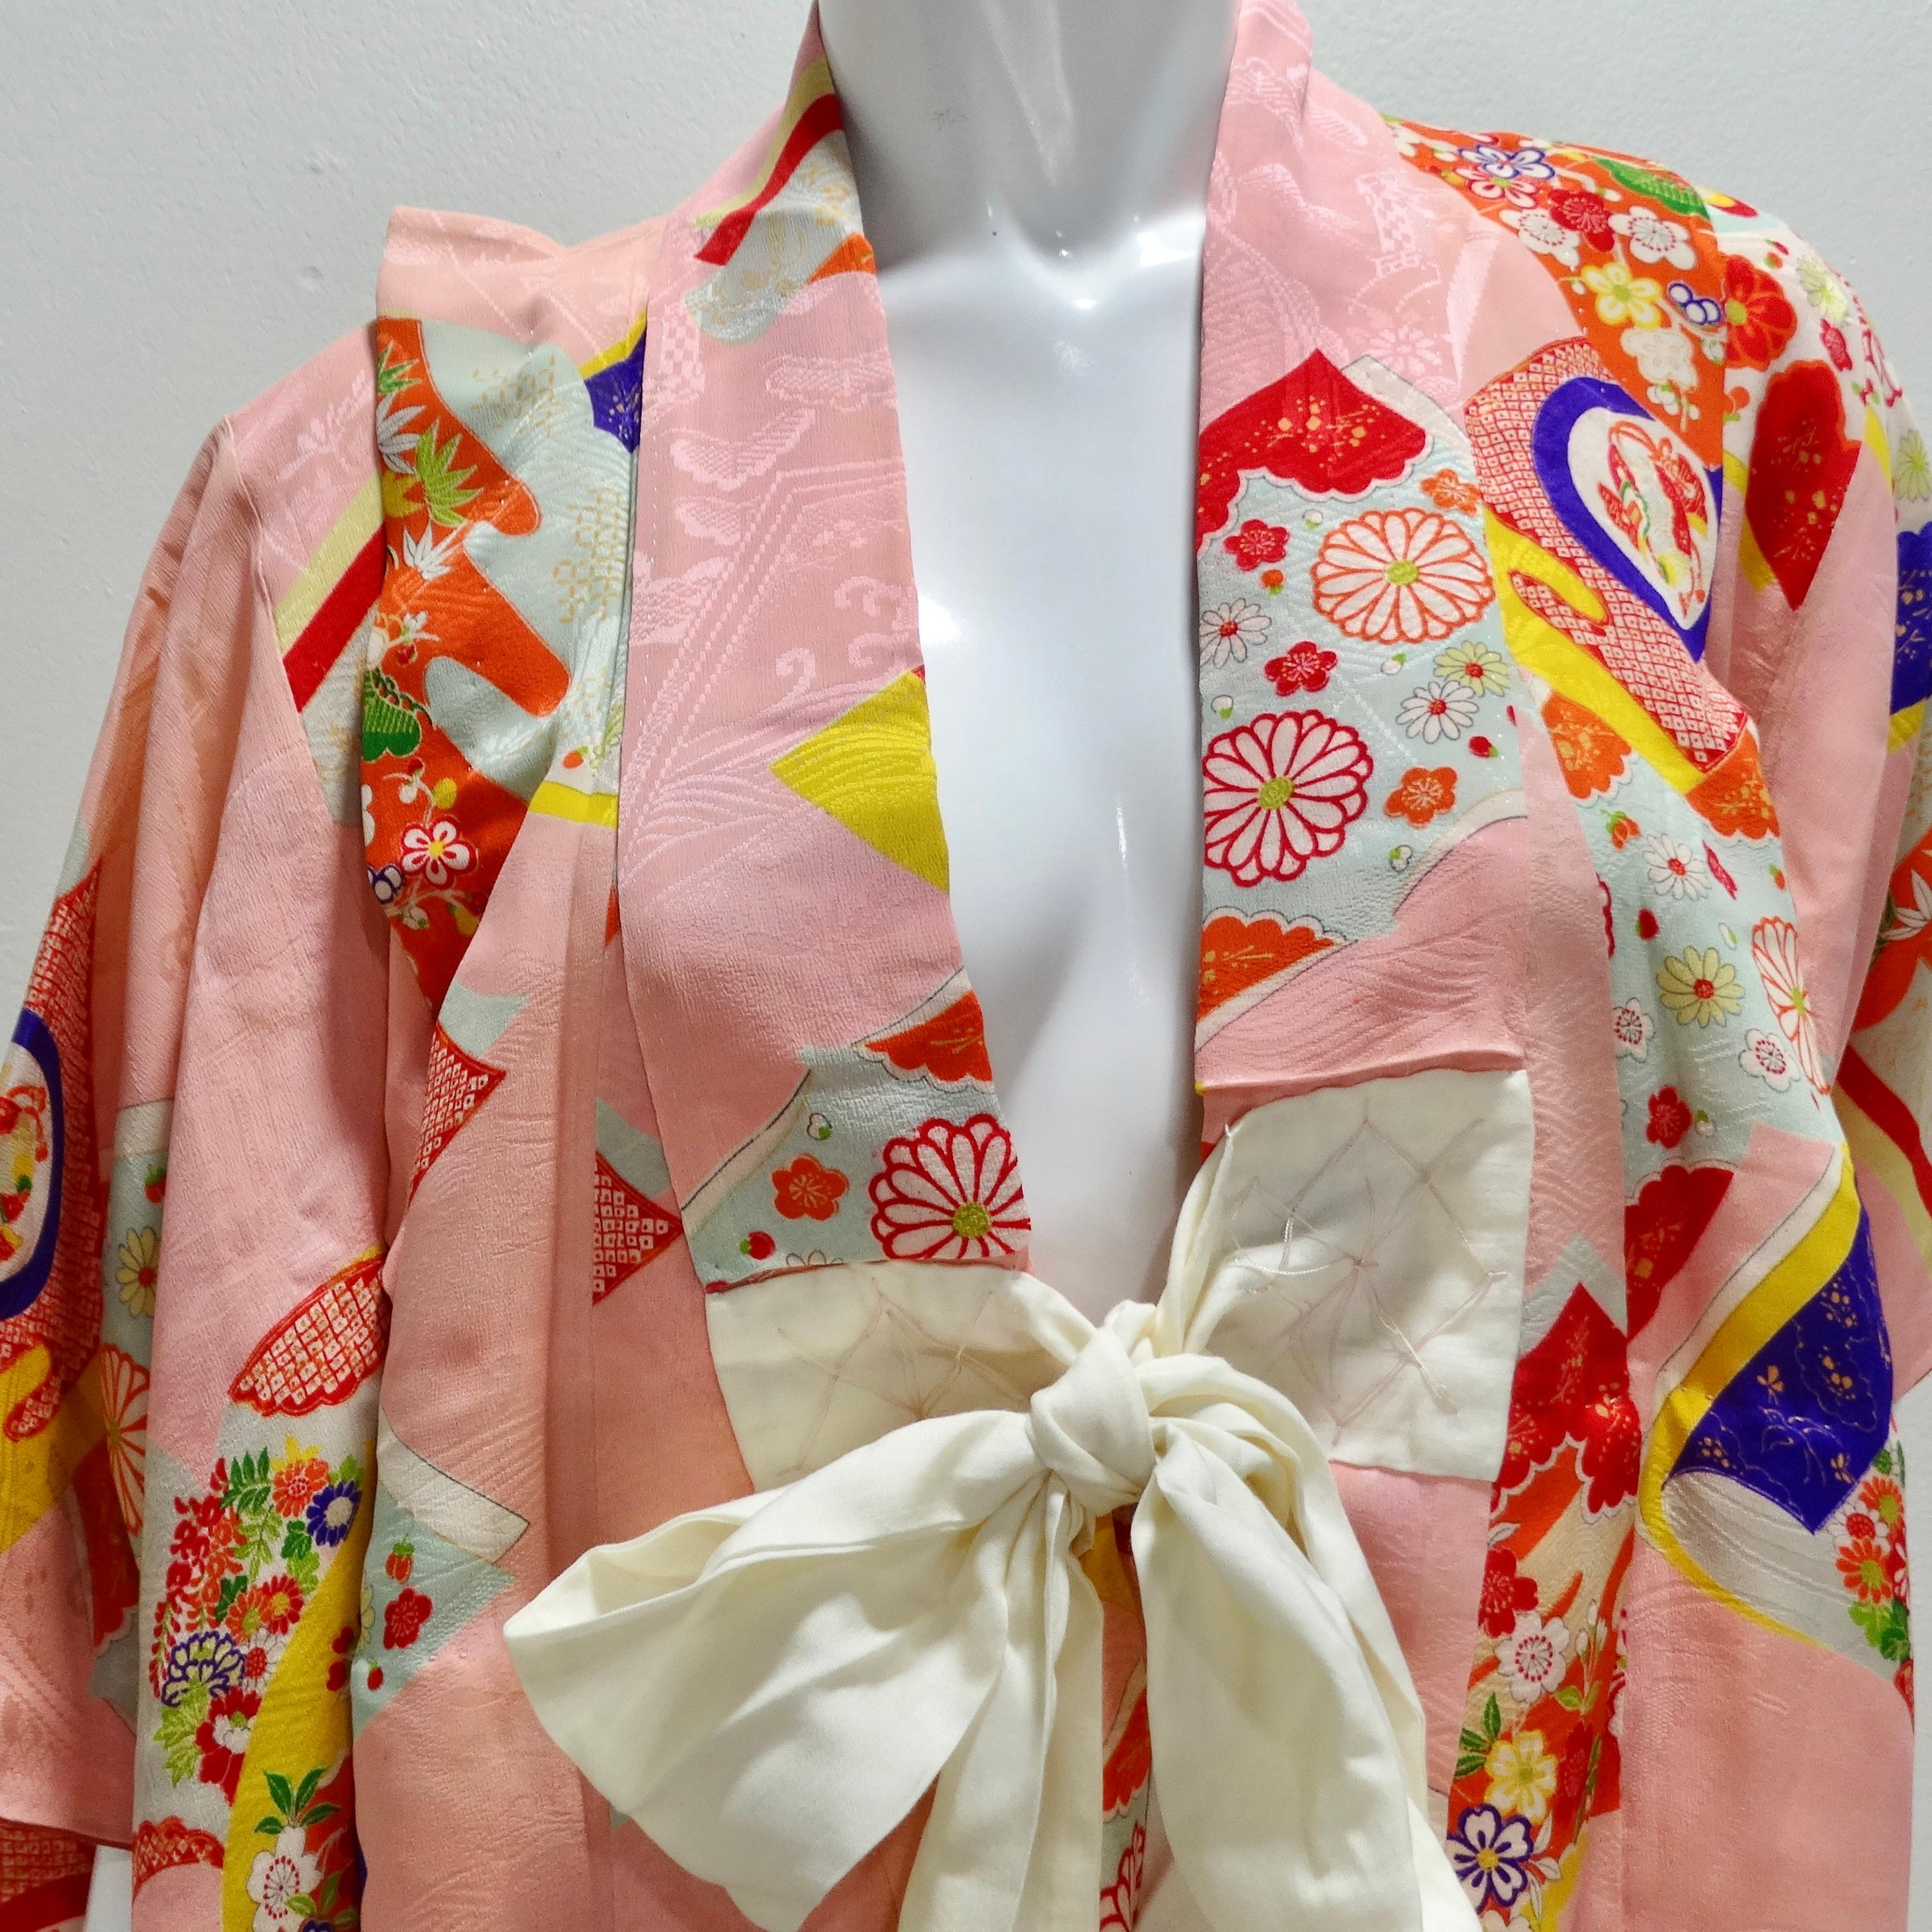 Der handgefertigte japanische Multicolor-Seidenkimono aus den 1970er Jahren - ein exquisiter und skurriler Schatz, der die Essenz traditioneller japanischer Kunst und Handwerkskunst einfängt. Dieser handgefertigte Kimono ist mehr als nur ein